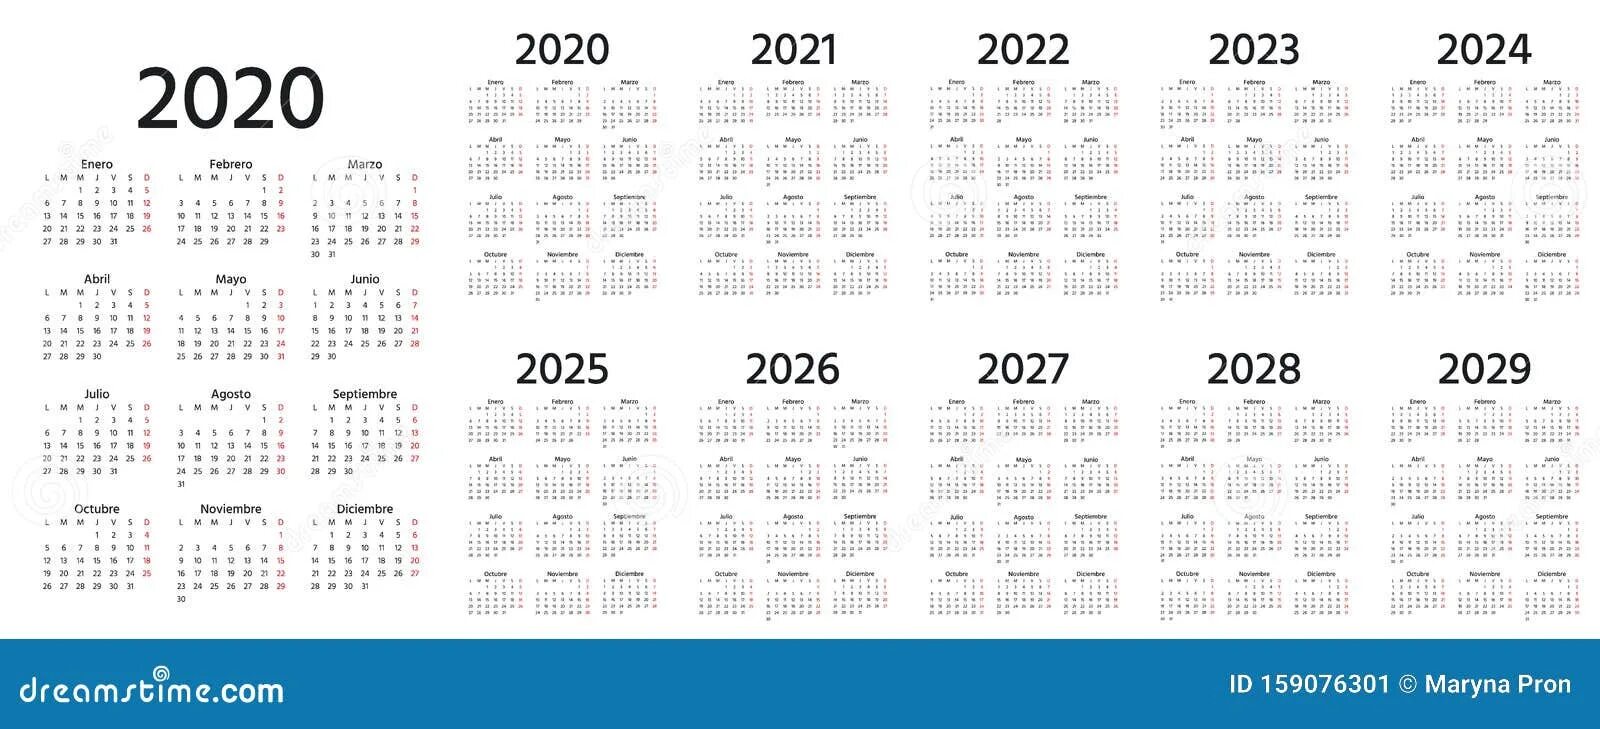 Календарь 2027г. Календарь 2020 2021 2022 2023. Календарь с 2019 по 2024 год. Календарь за 2020 2021 2022. Календарь годов 2020-2030.